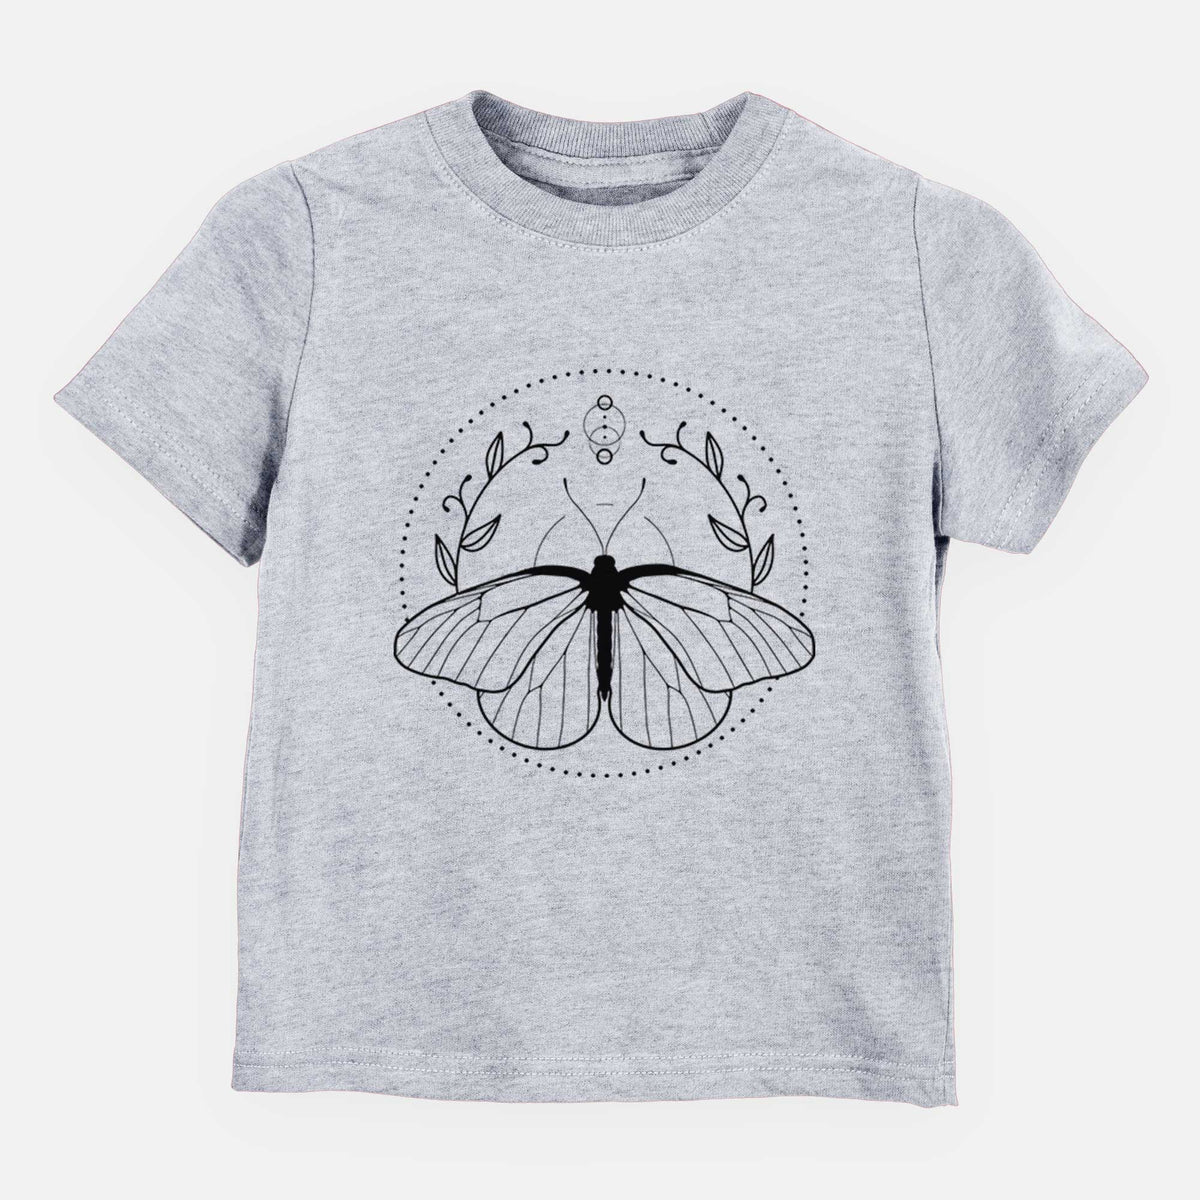 Aporia crataegi - Black Veined White Butterfly - Kids Shirt